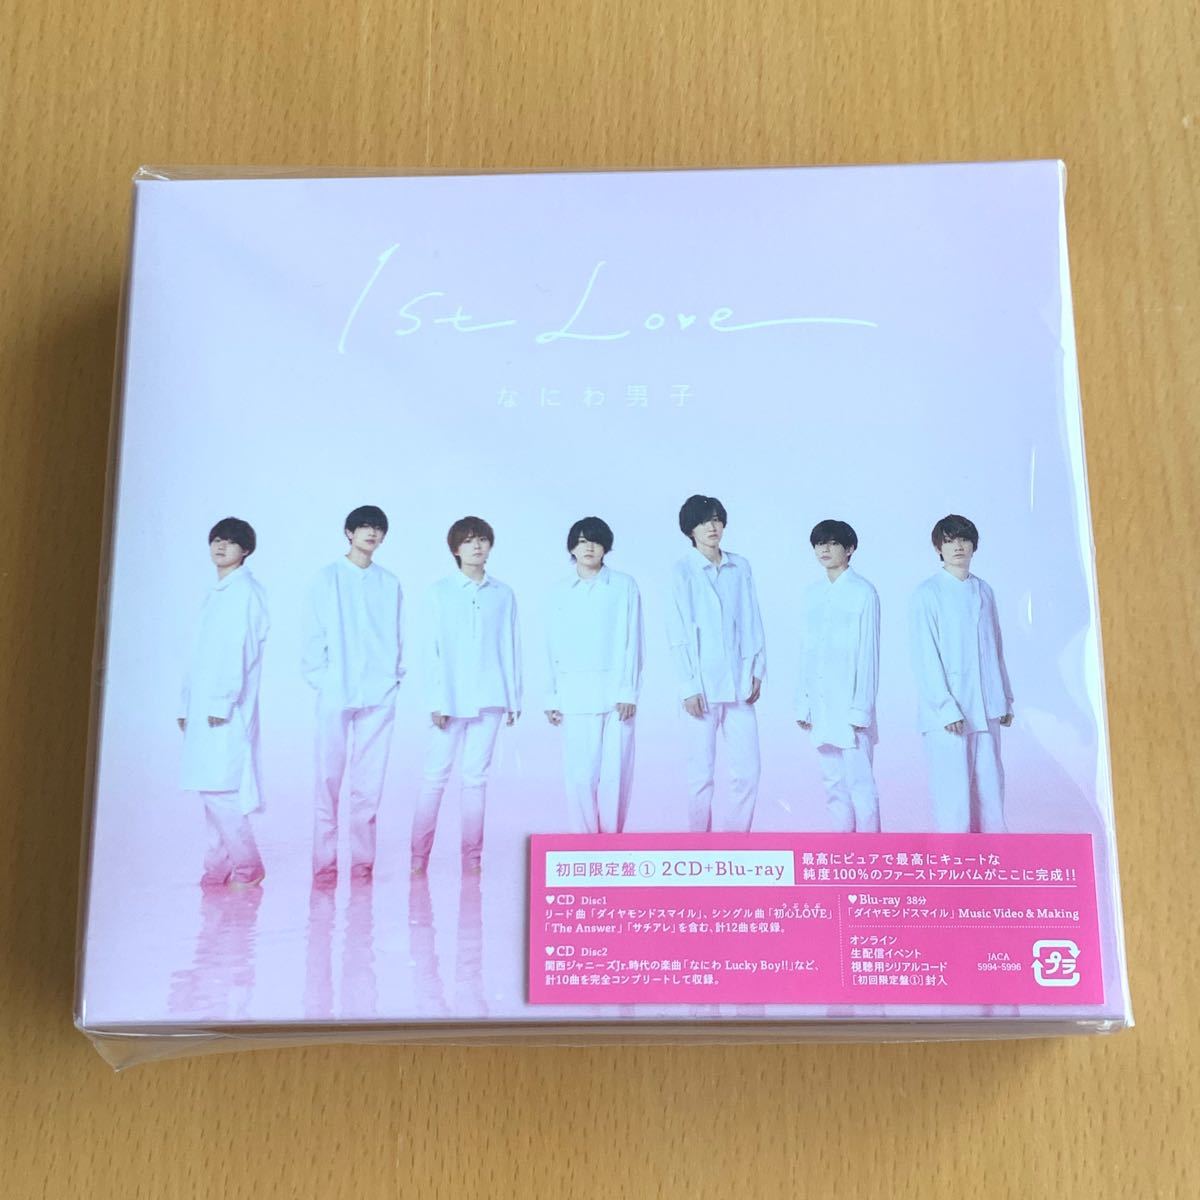 なにわ男子 1st Love アルバム CD Blu-ray 初回限定盤 1